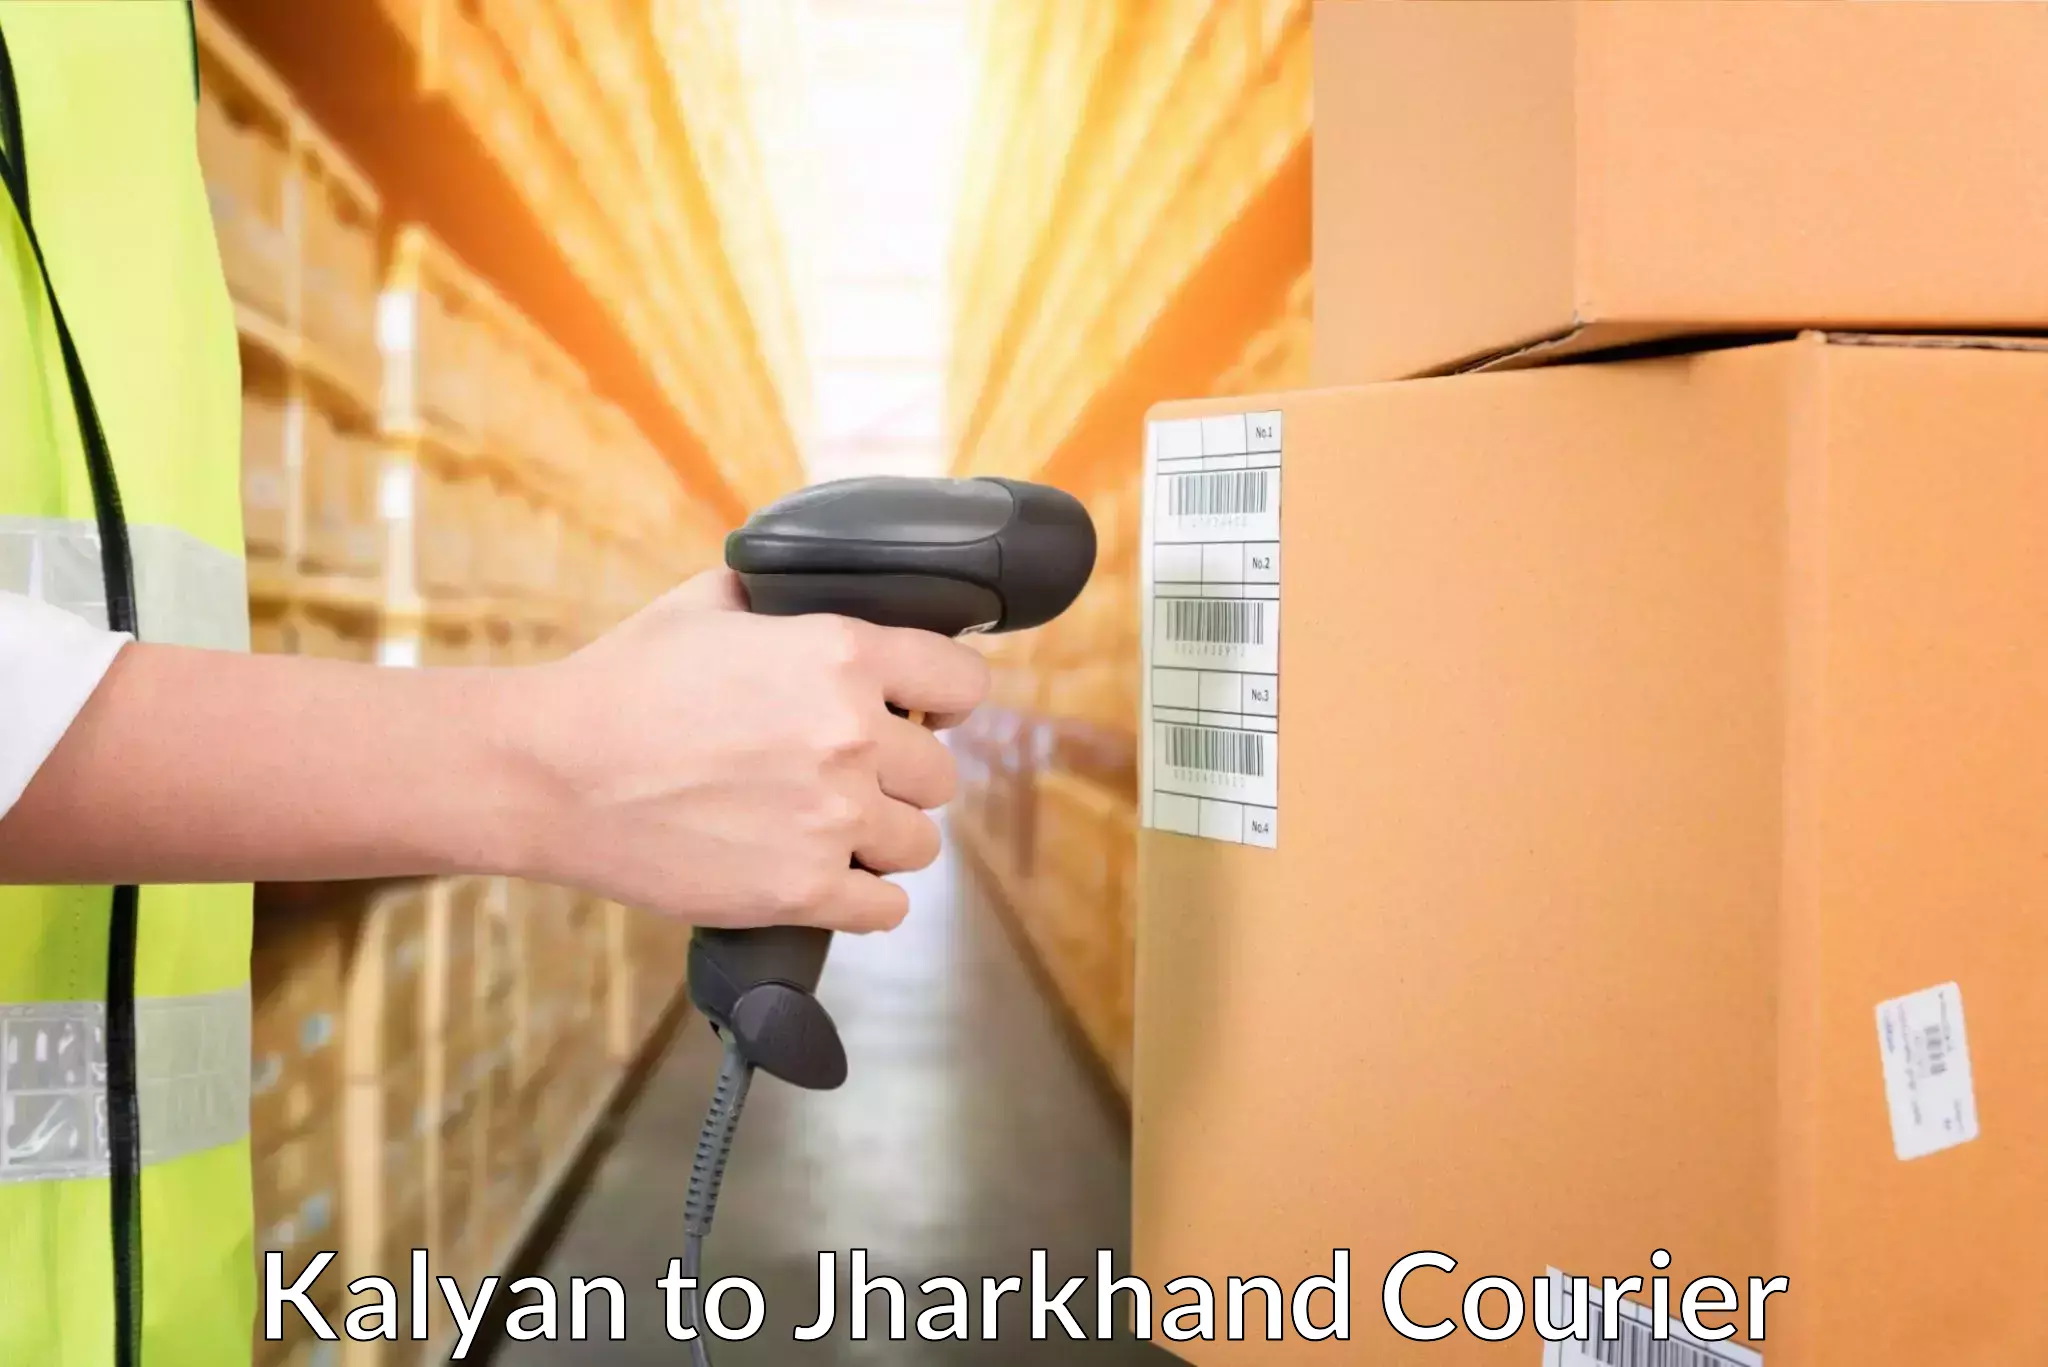 Large package courier Kalyan to Seraikela Kharsawan